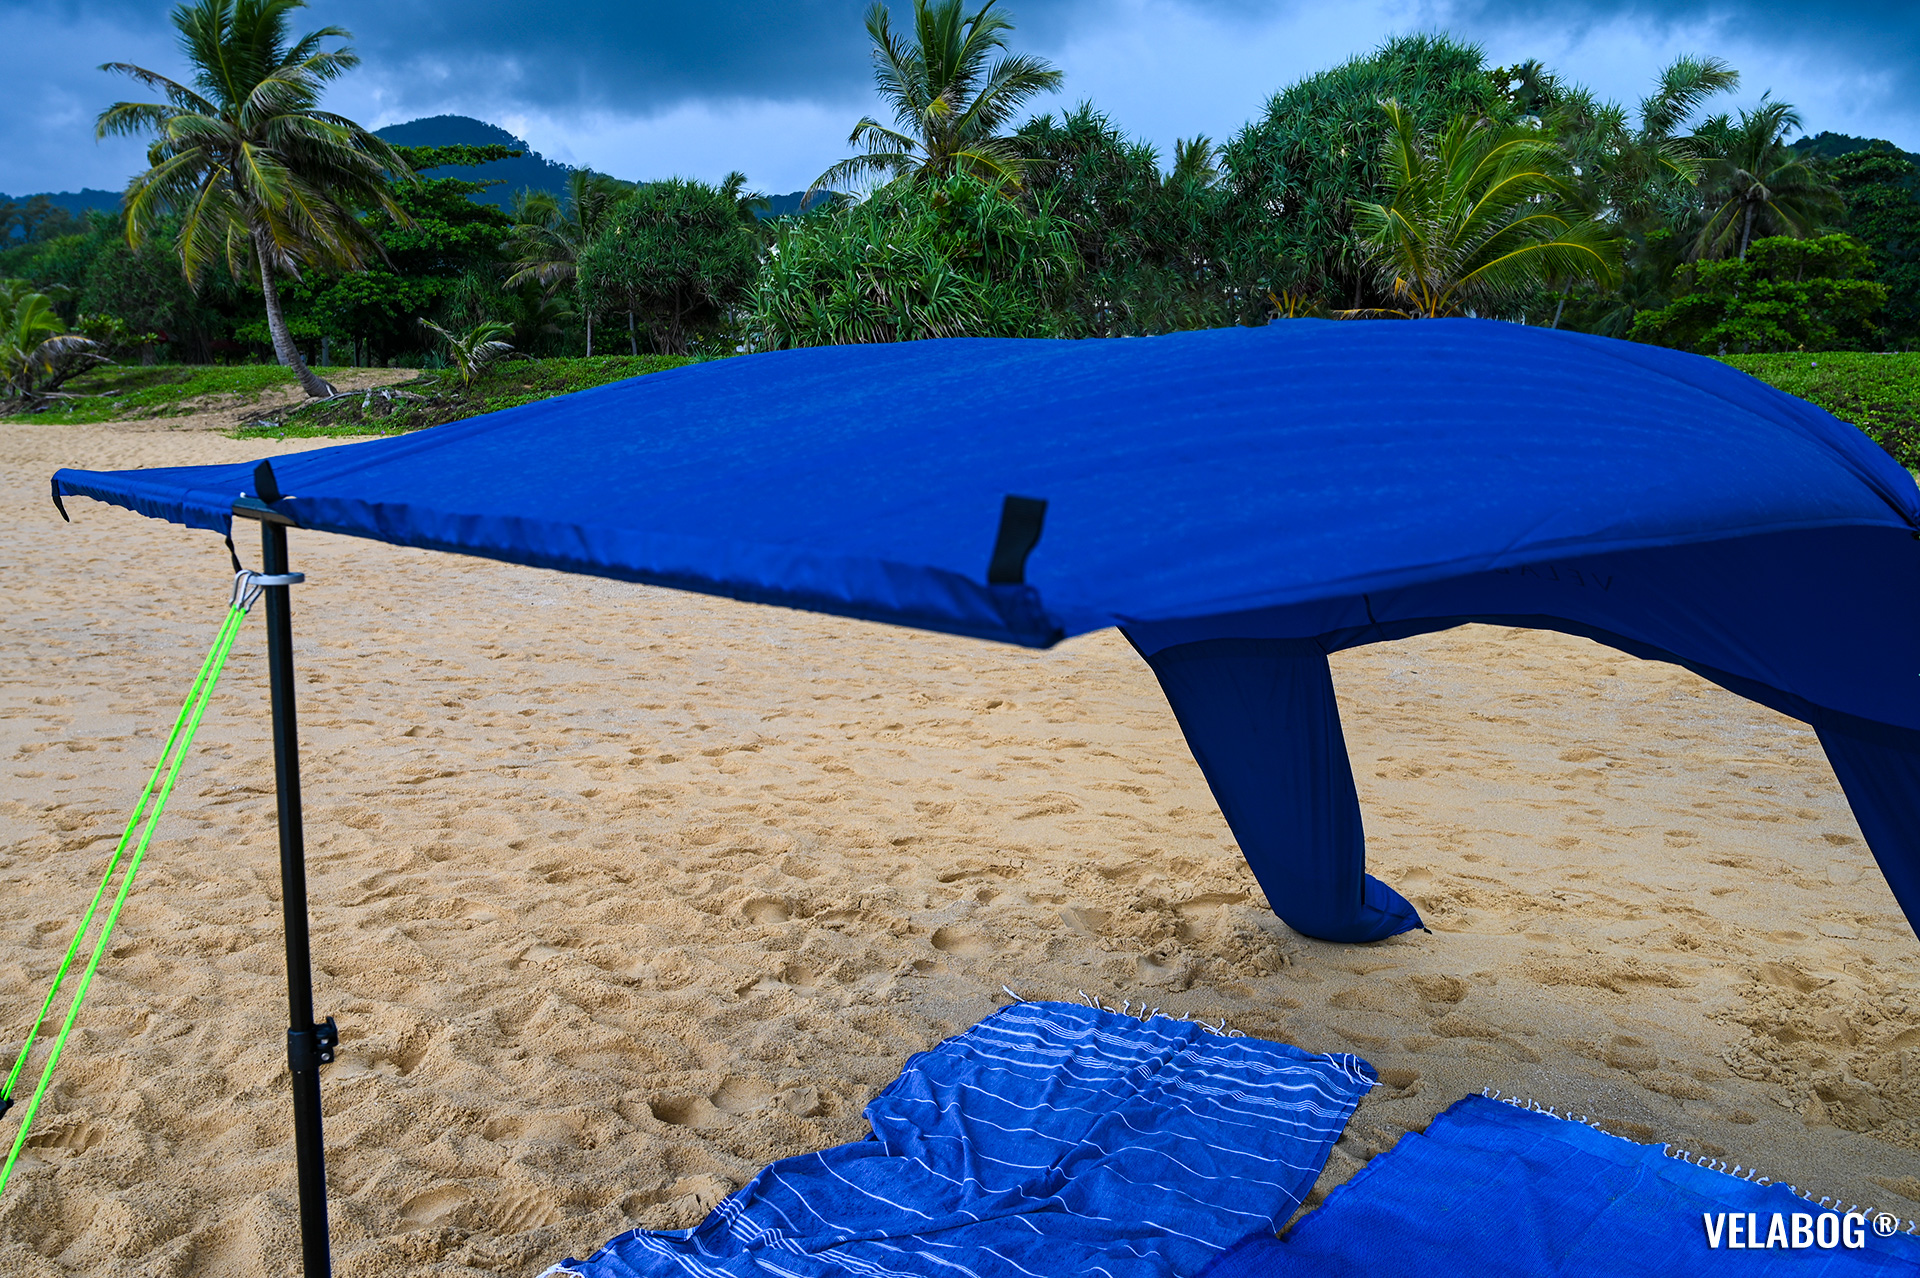 Strand Sonnensegel Strandzelt Velabog Breeze, nachtblau. Am Strand in Thailand während einer Regenschauer. Bester Sonnenschutz Strand. Test Strand Sonnensegel Aufbauoption beim leichten bis starken Wind. Windstabil. Ansicht von vorne. Details.